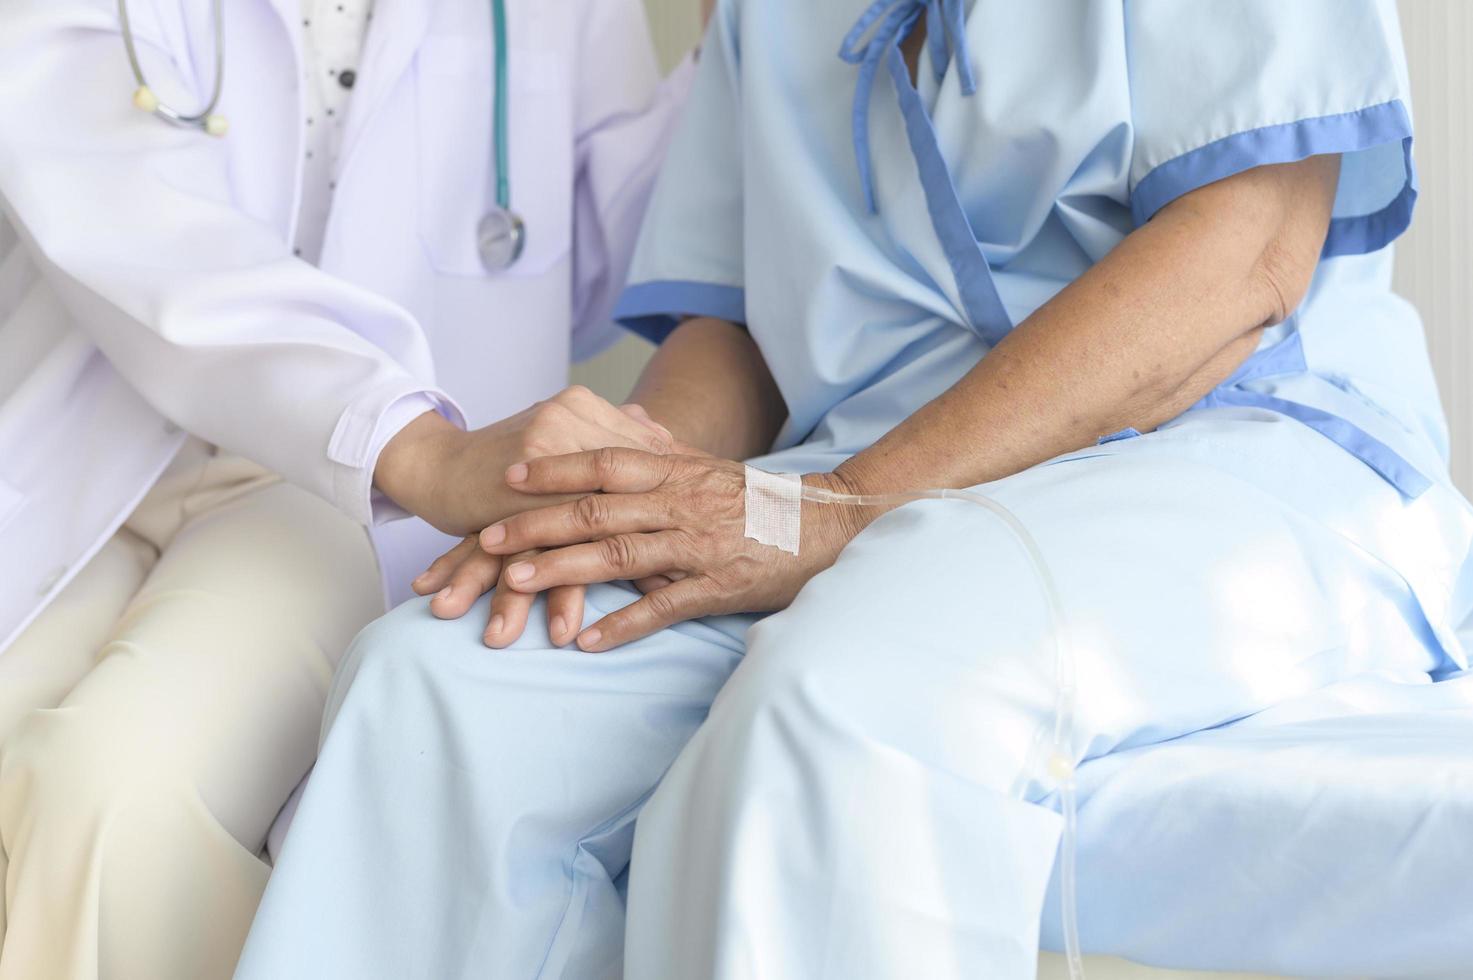 médico sosteniendo la mano de un paciente con cáncer en el hospital, atención médica y concepto médico foto